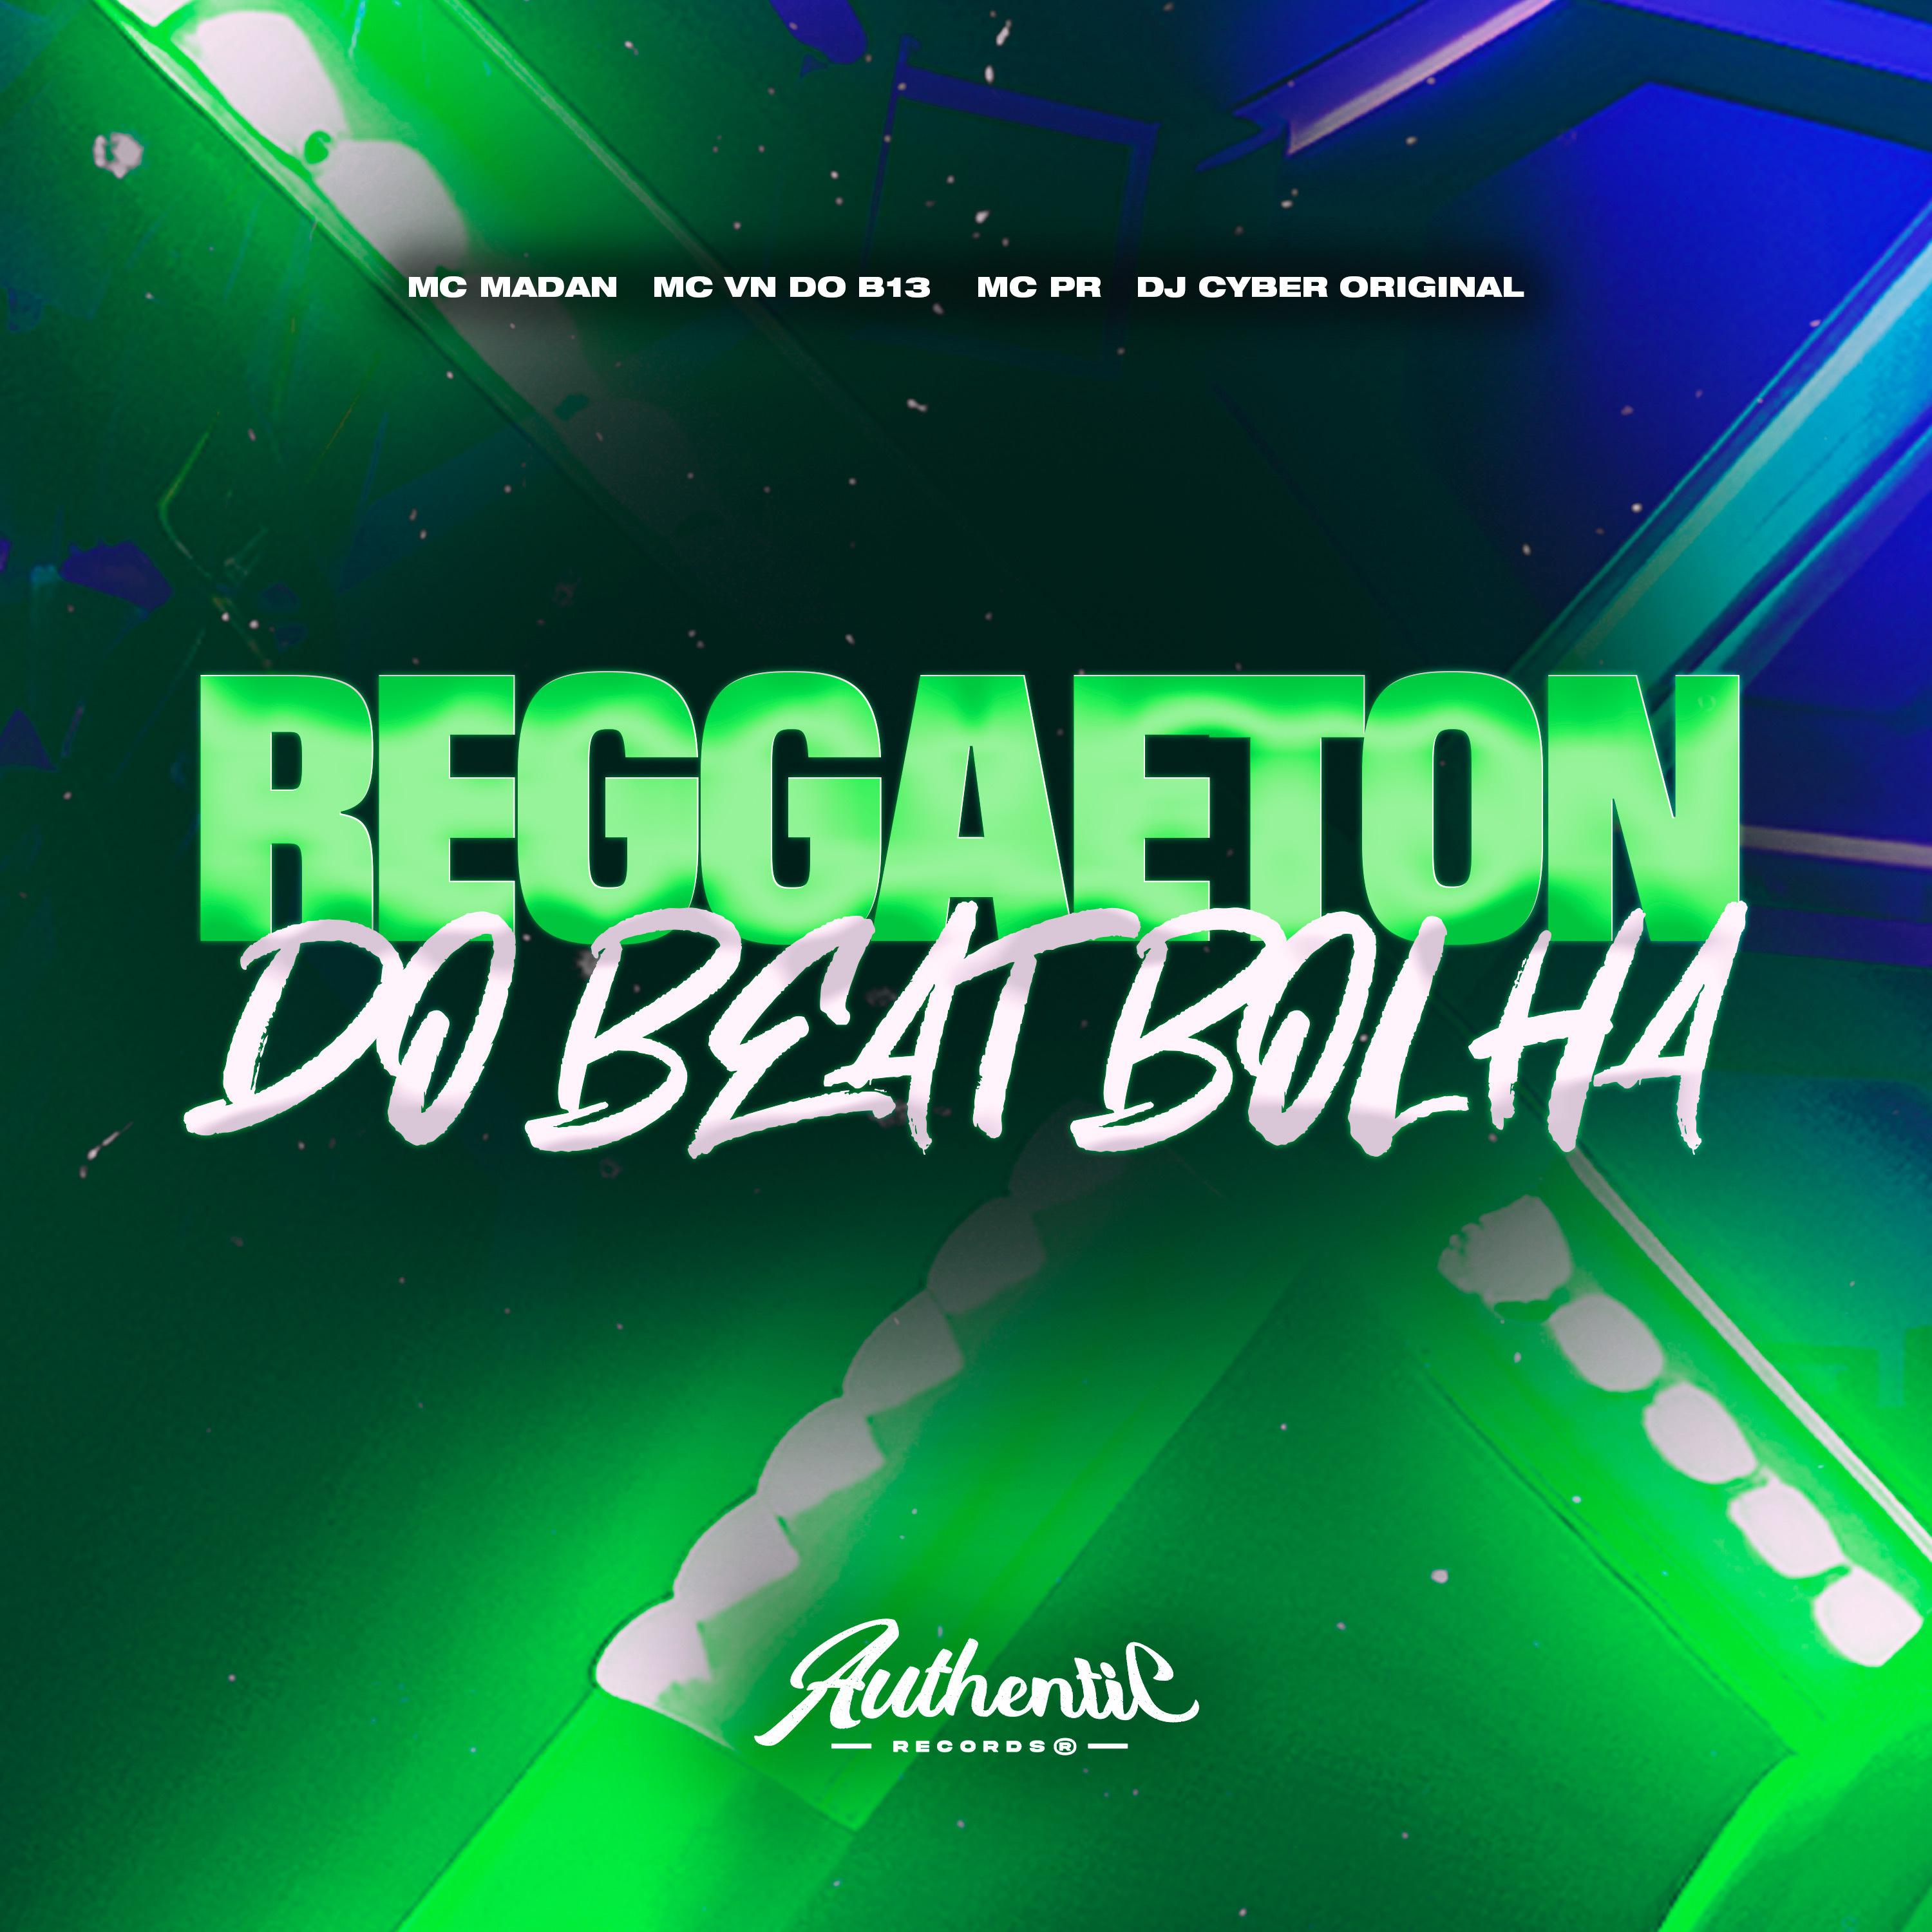 DJ Cyber Original - Reggaeton do Beat Bolha